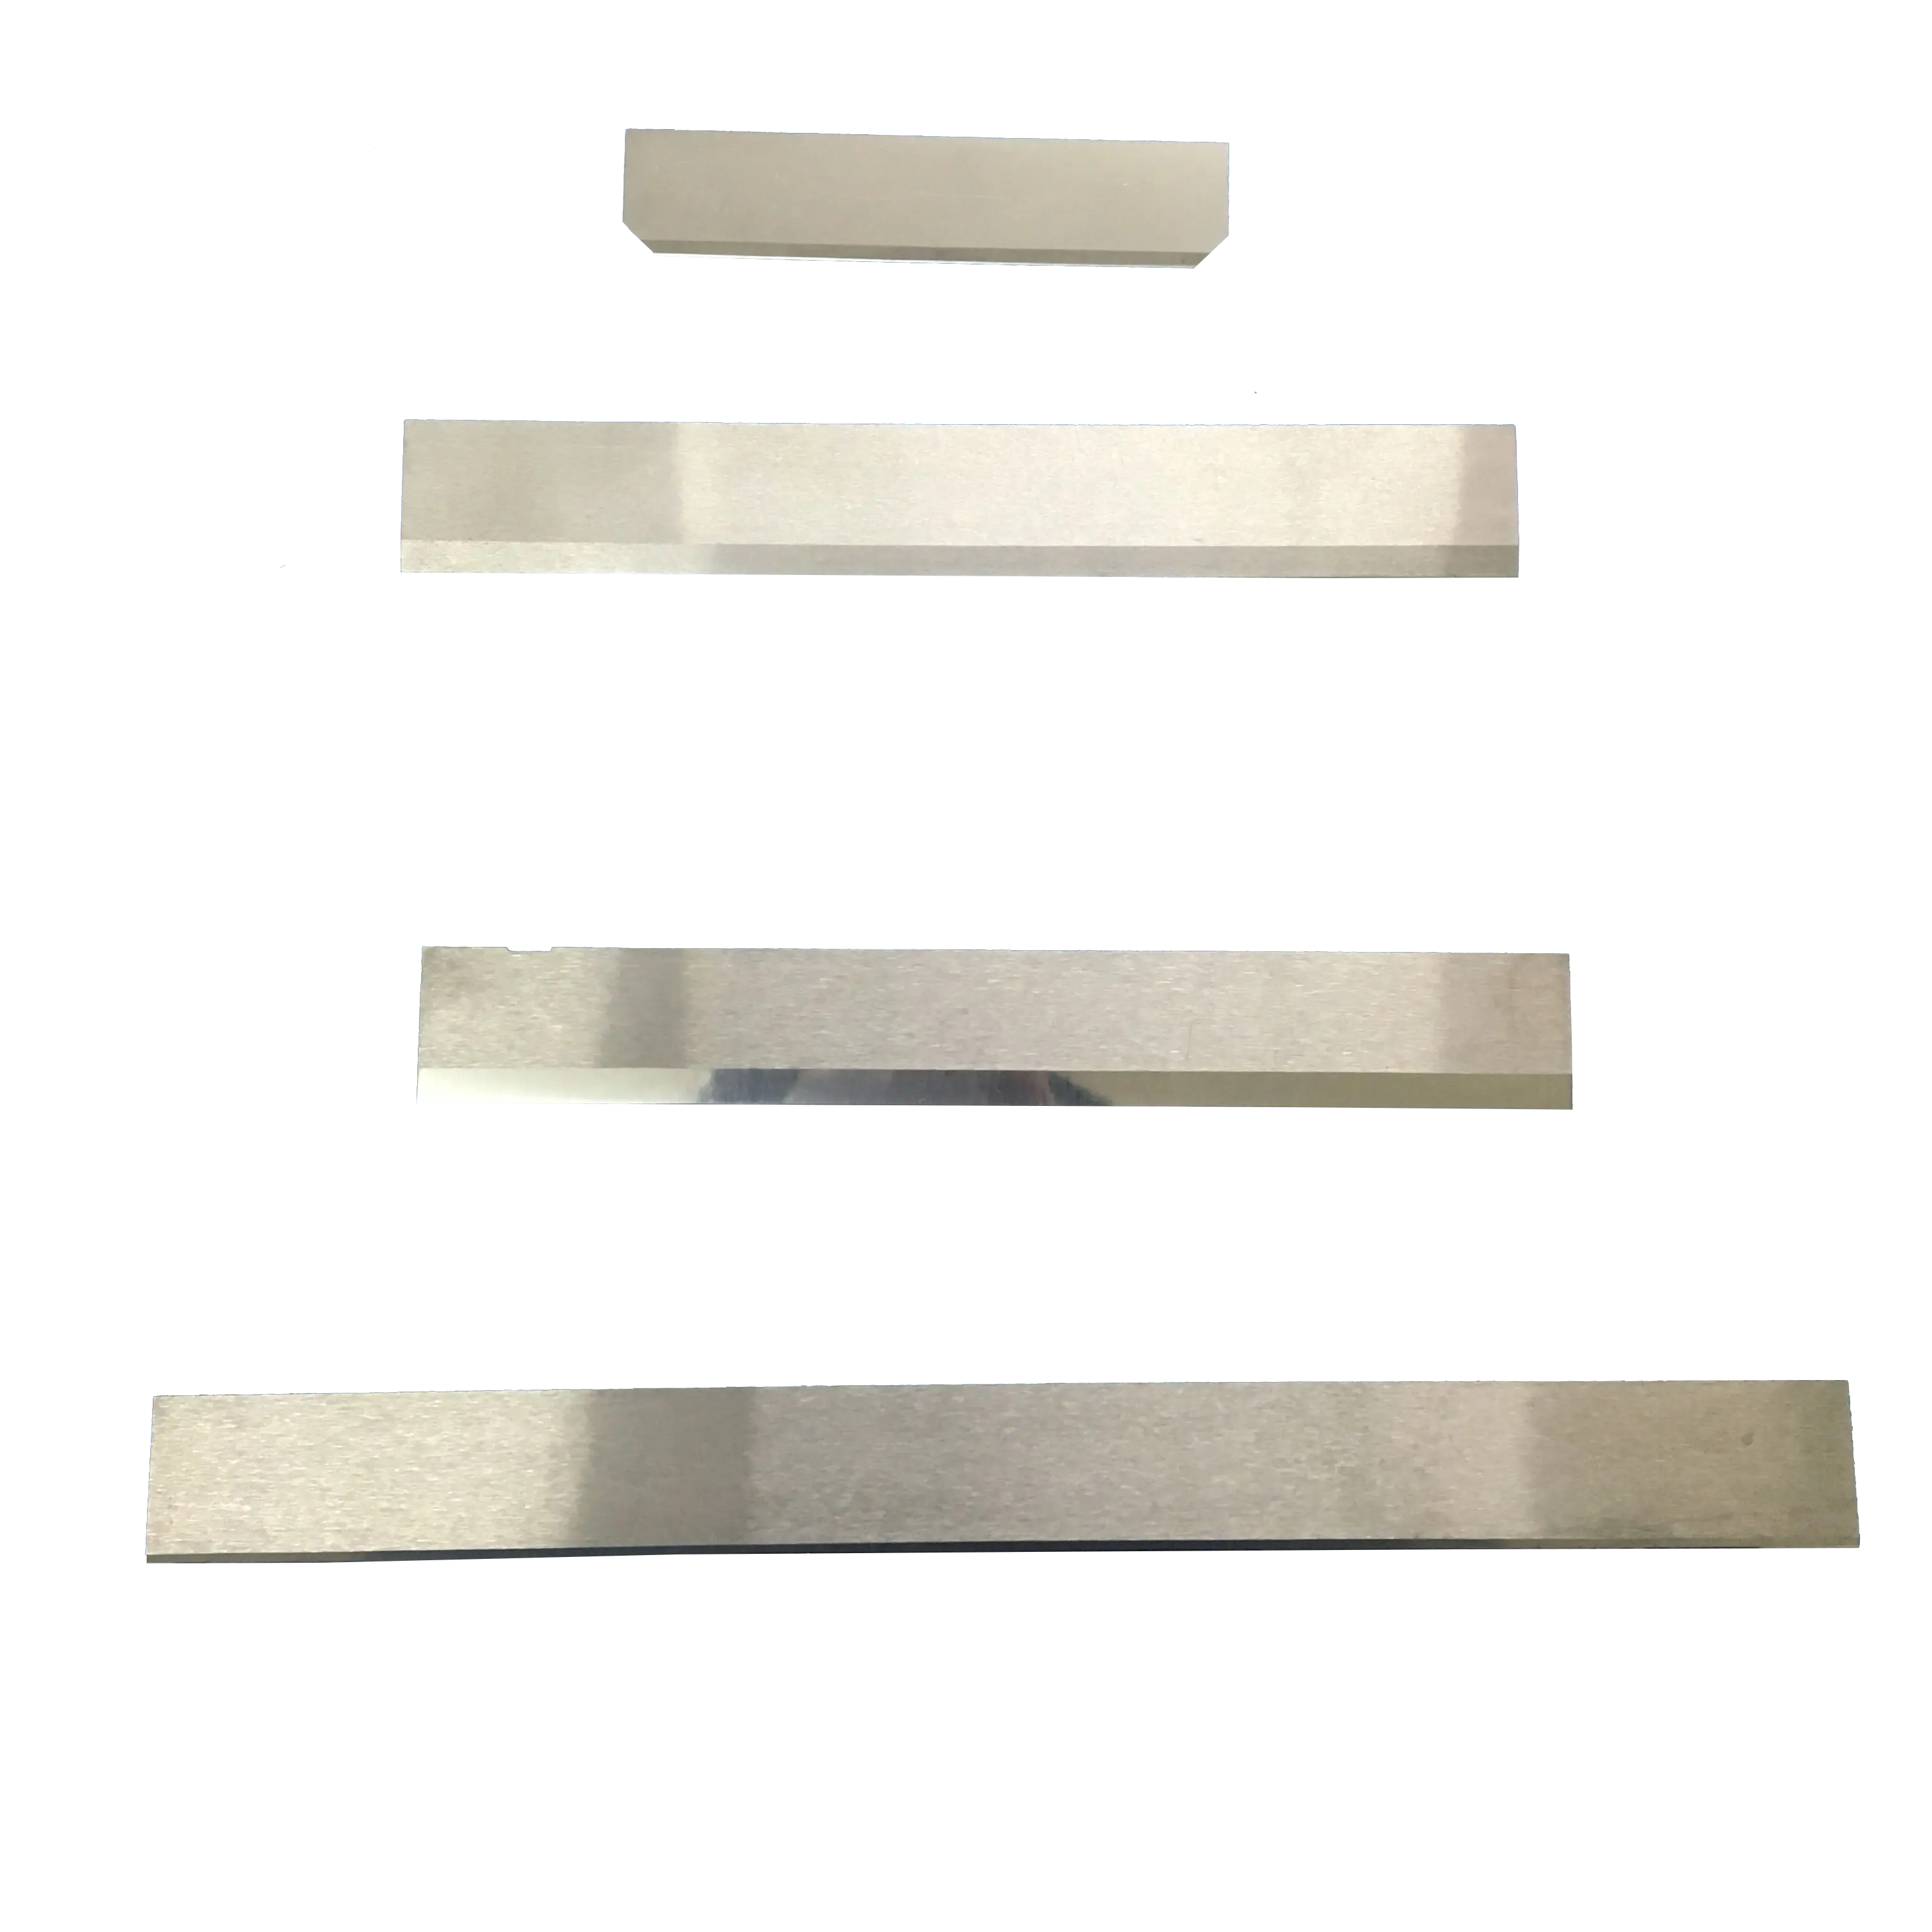 Chất Lượng Hàng Đầu Cuộc Sống Lâu Dài Dịch Vụ Rắn Tungsten Carbide Blade Dệt May Phụ Kiện Máy Móc